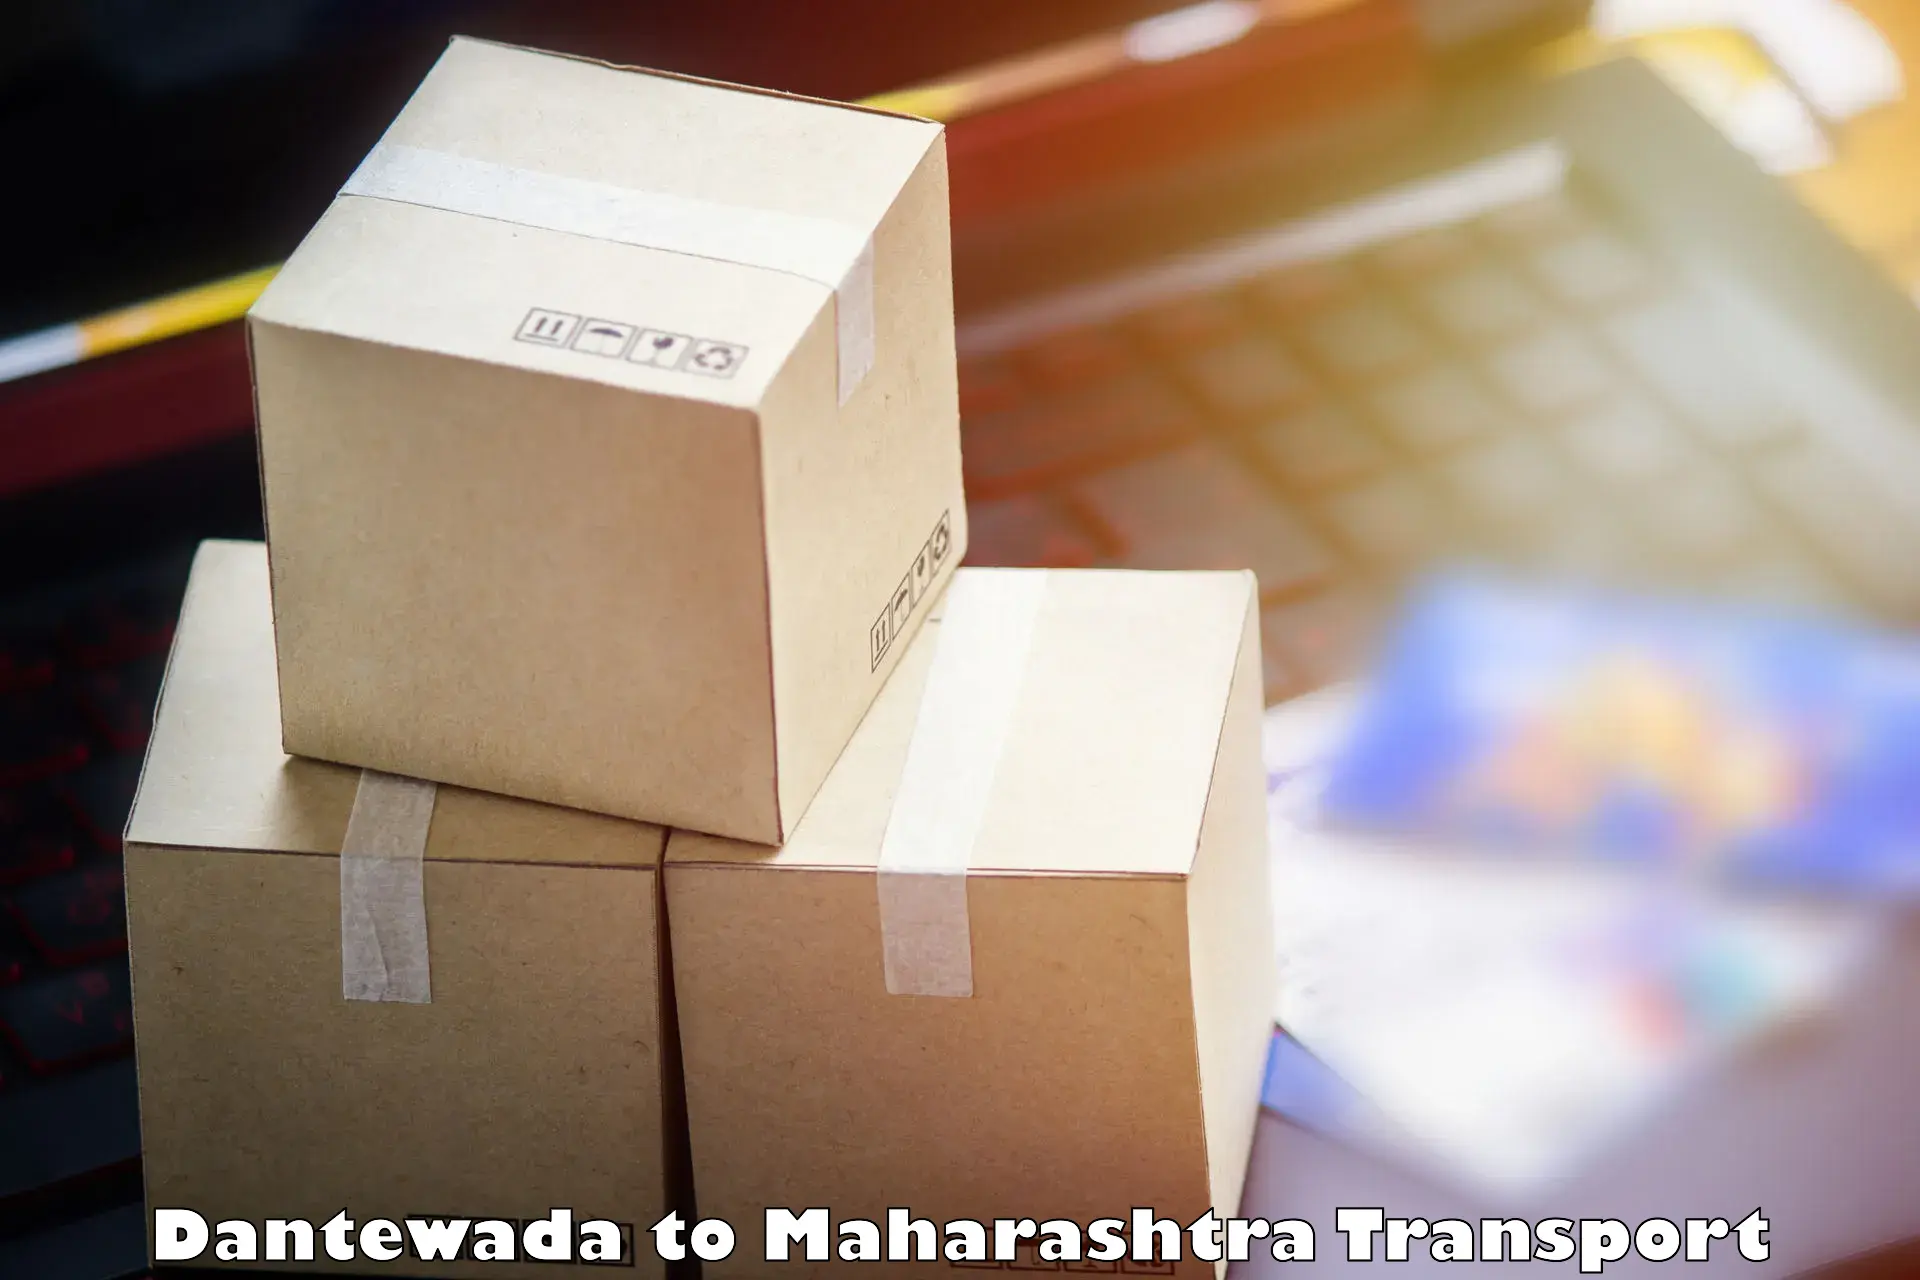 Goods delivery service Dantewada to Tata Institute of Social Sciences Mumbai